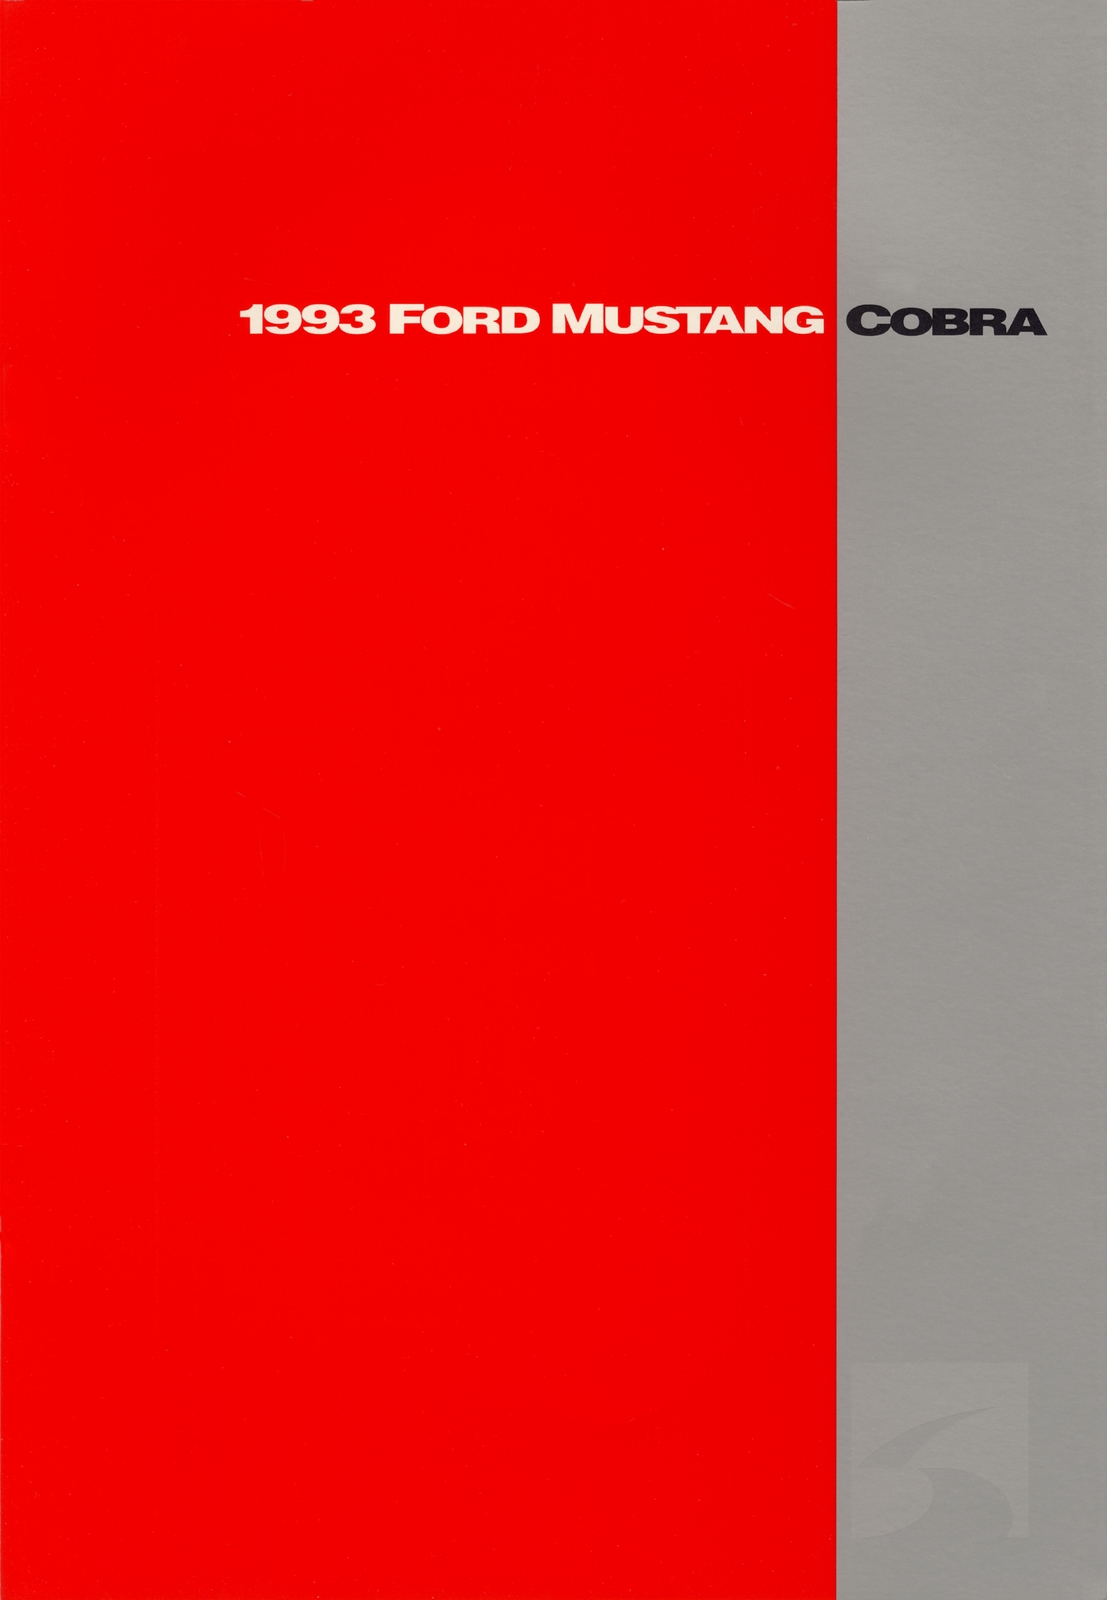 n_1993 Ford Mustang Cobra-01.jpg